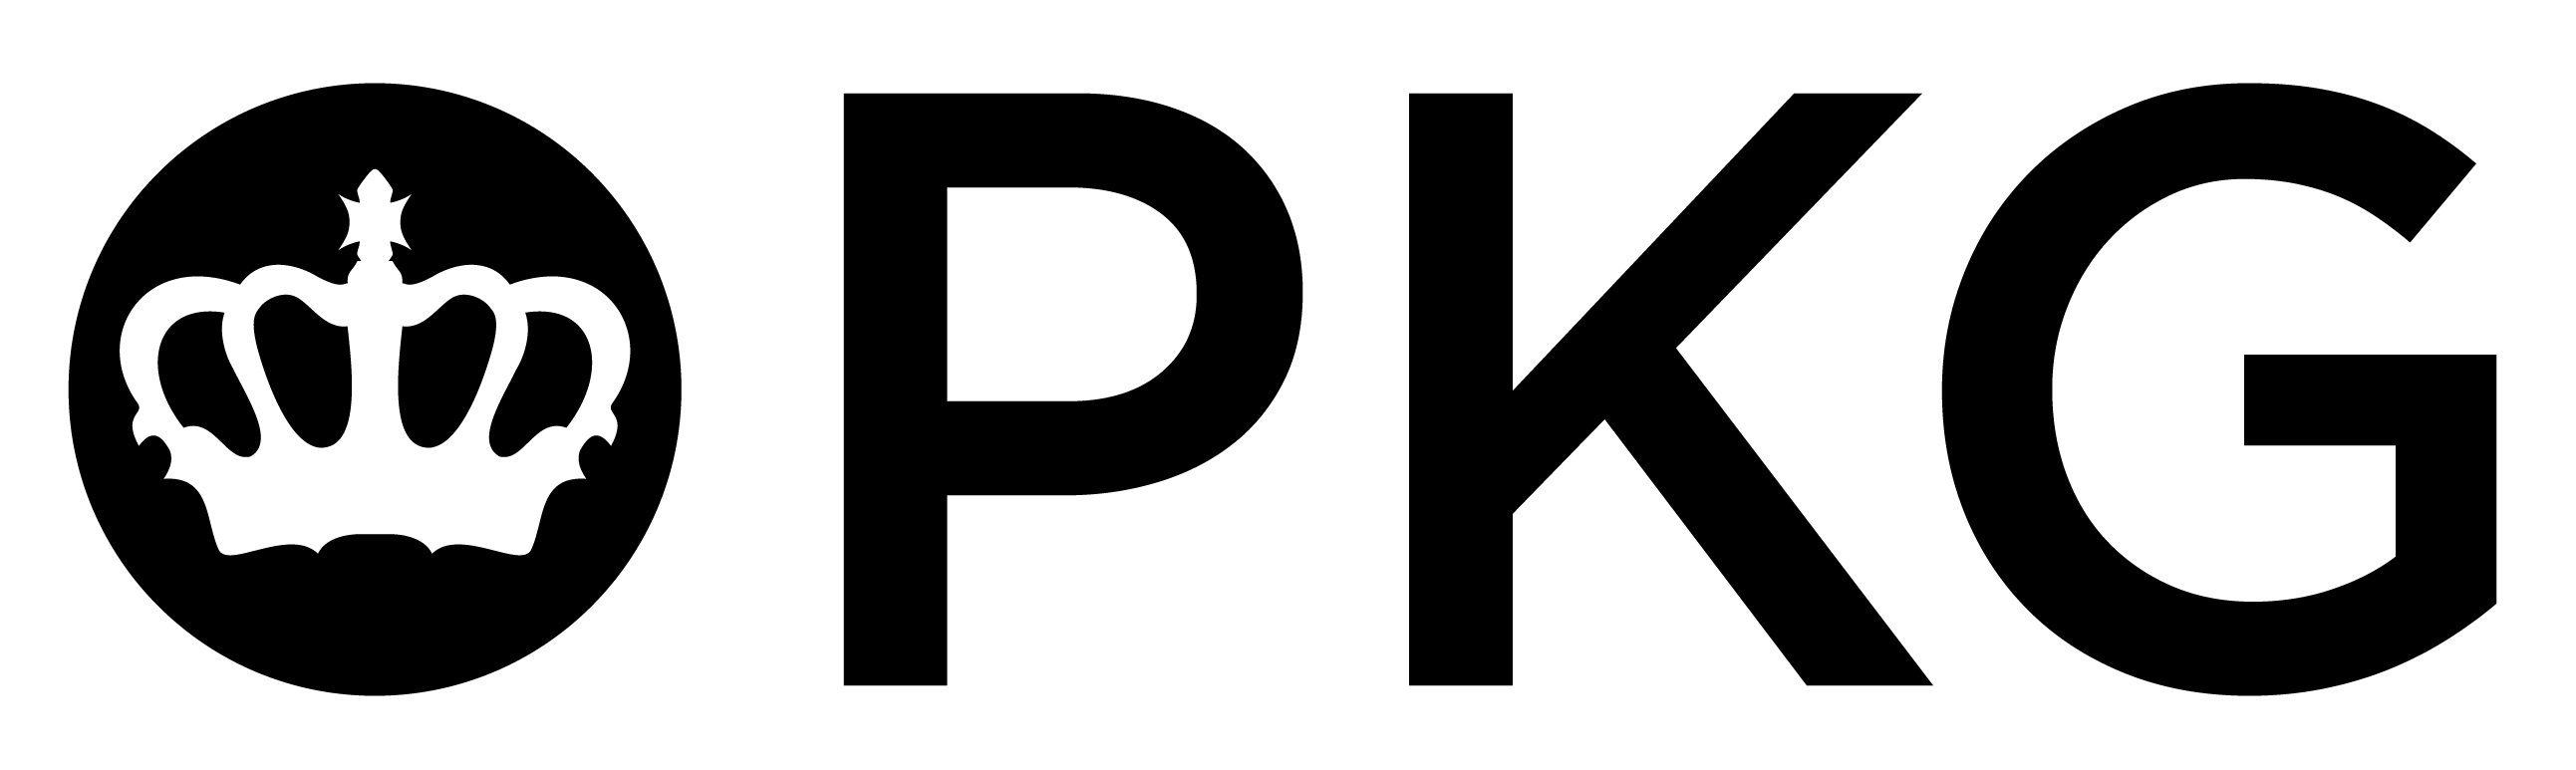 Pkg Logo - PKG